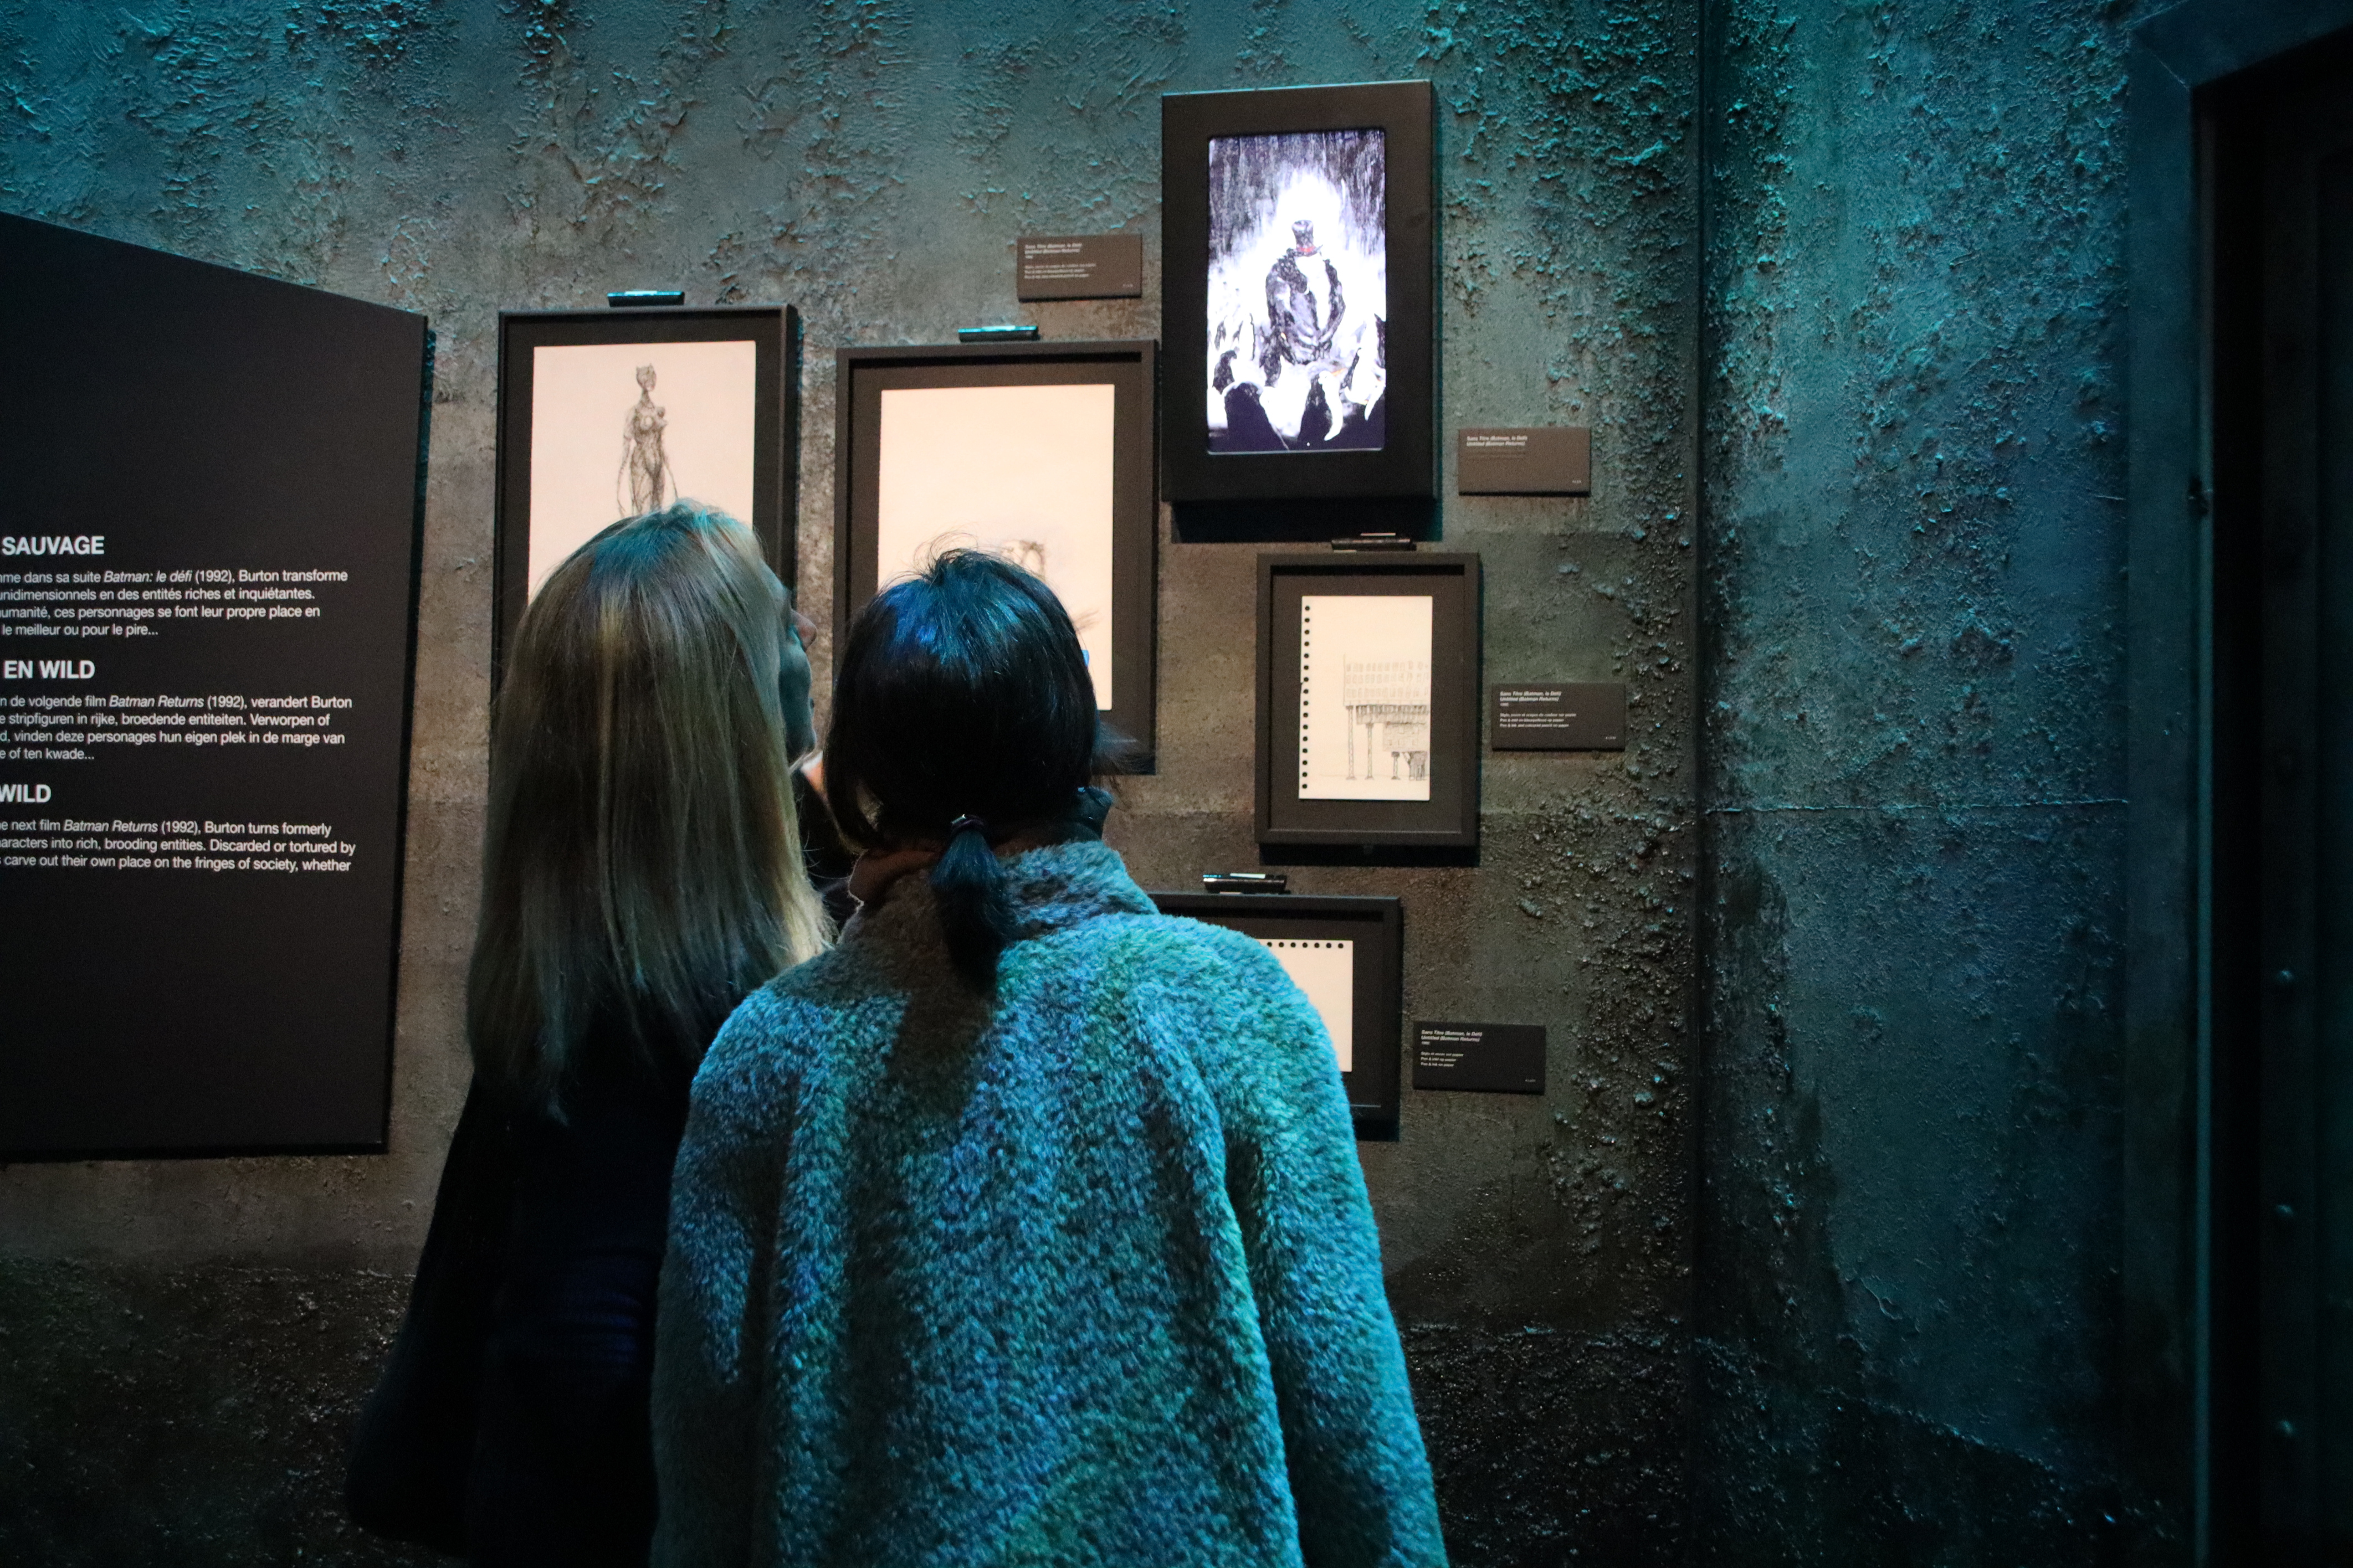 Dues visitants mirant alguns dels quadres de l'exposició 'Tim Burton's Labyrinth' a Brussel·les